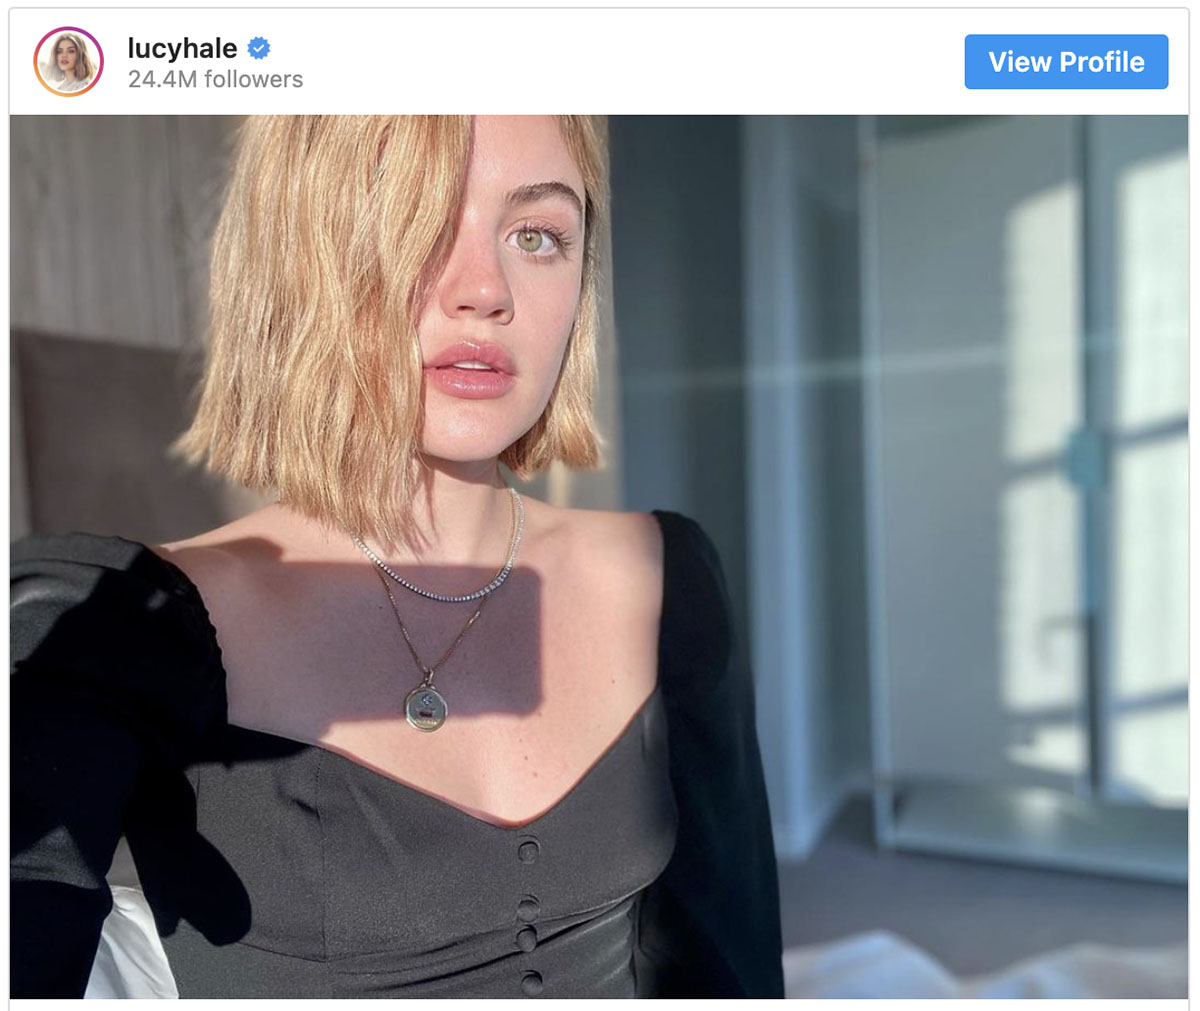 La nuance di biondo scelto da Lucy Hale direttamente dal suo profilo Instagram